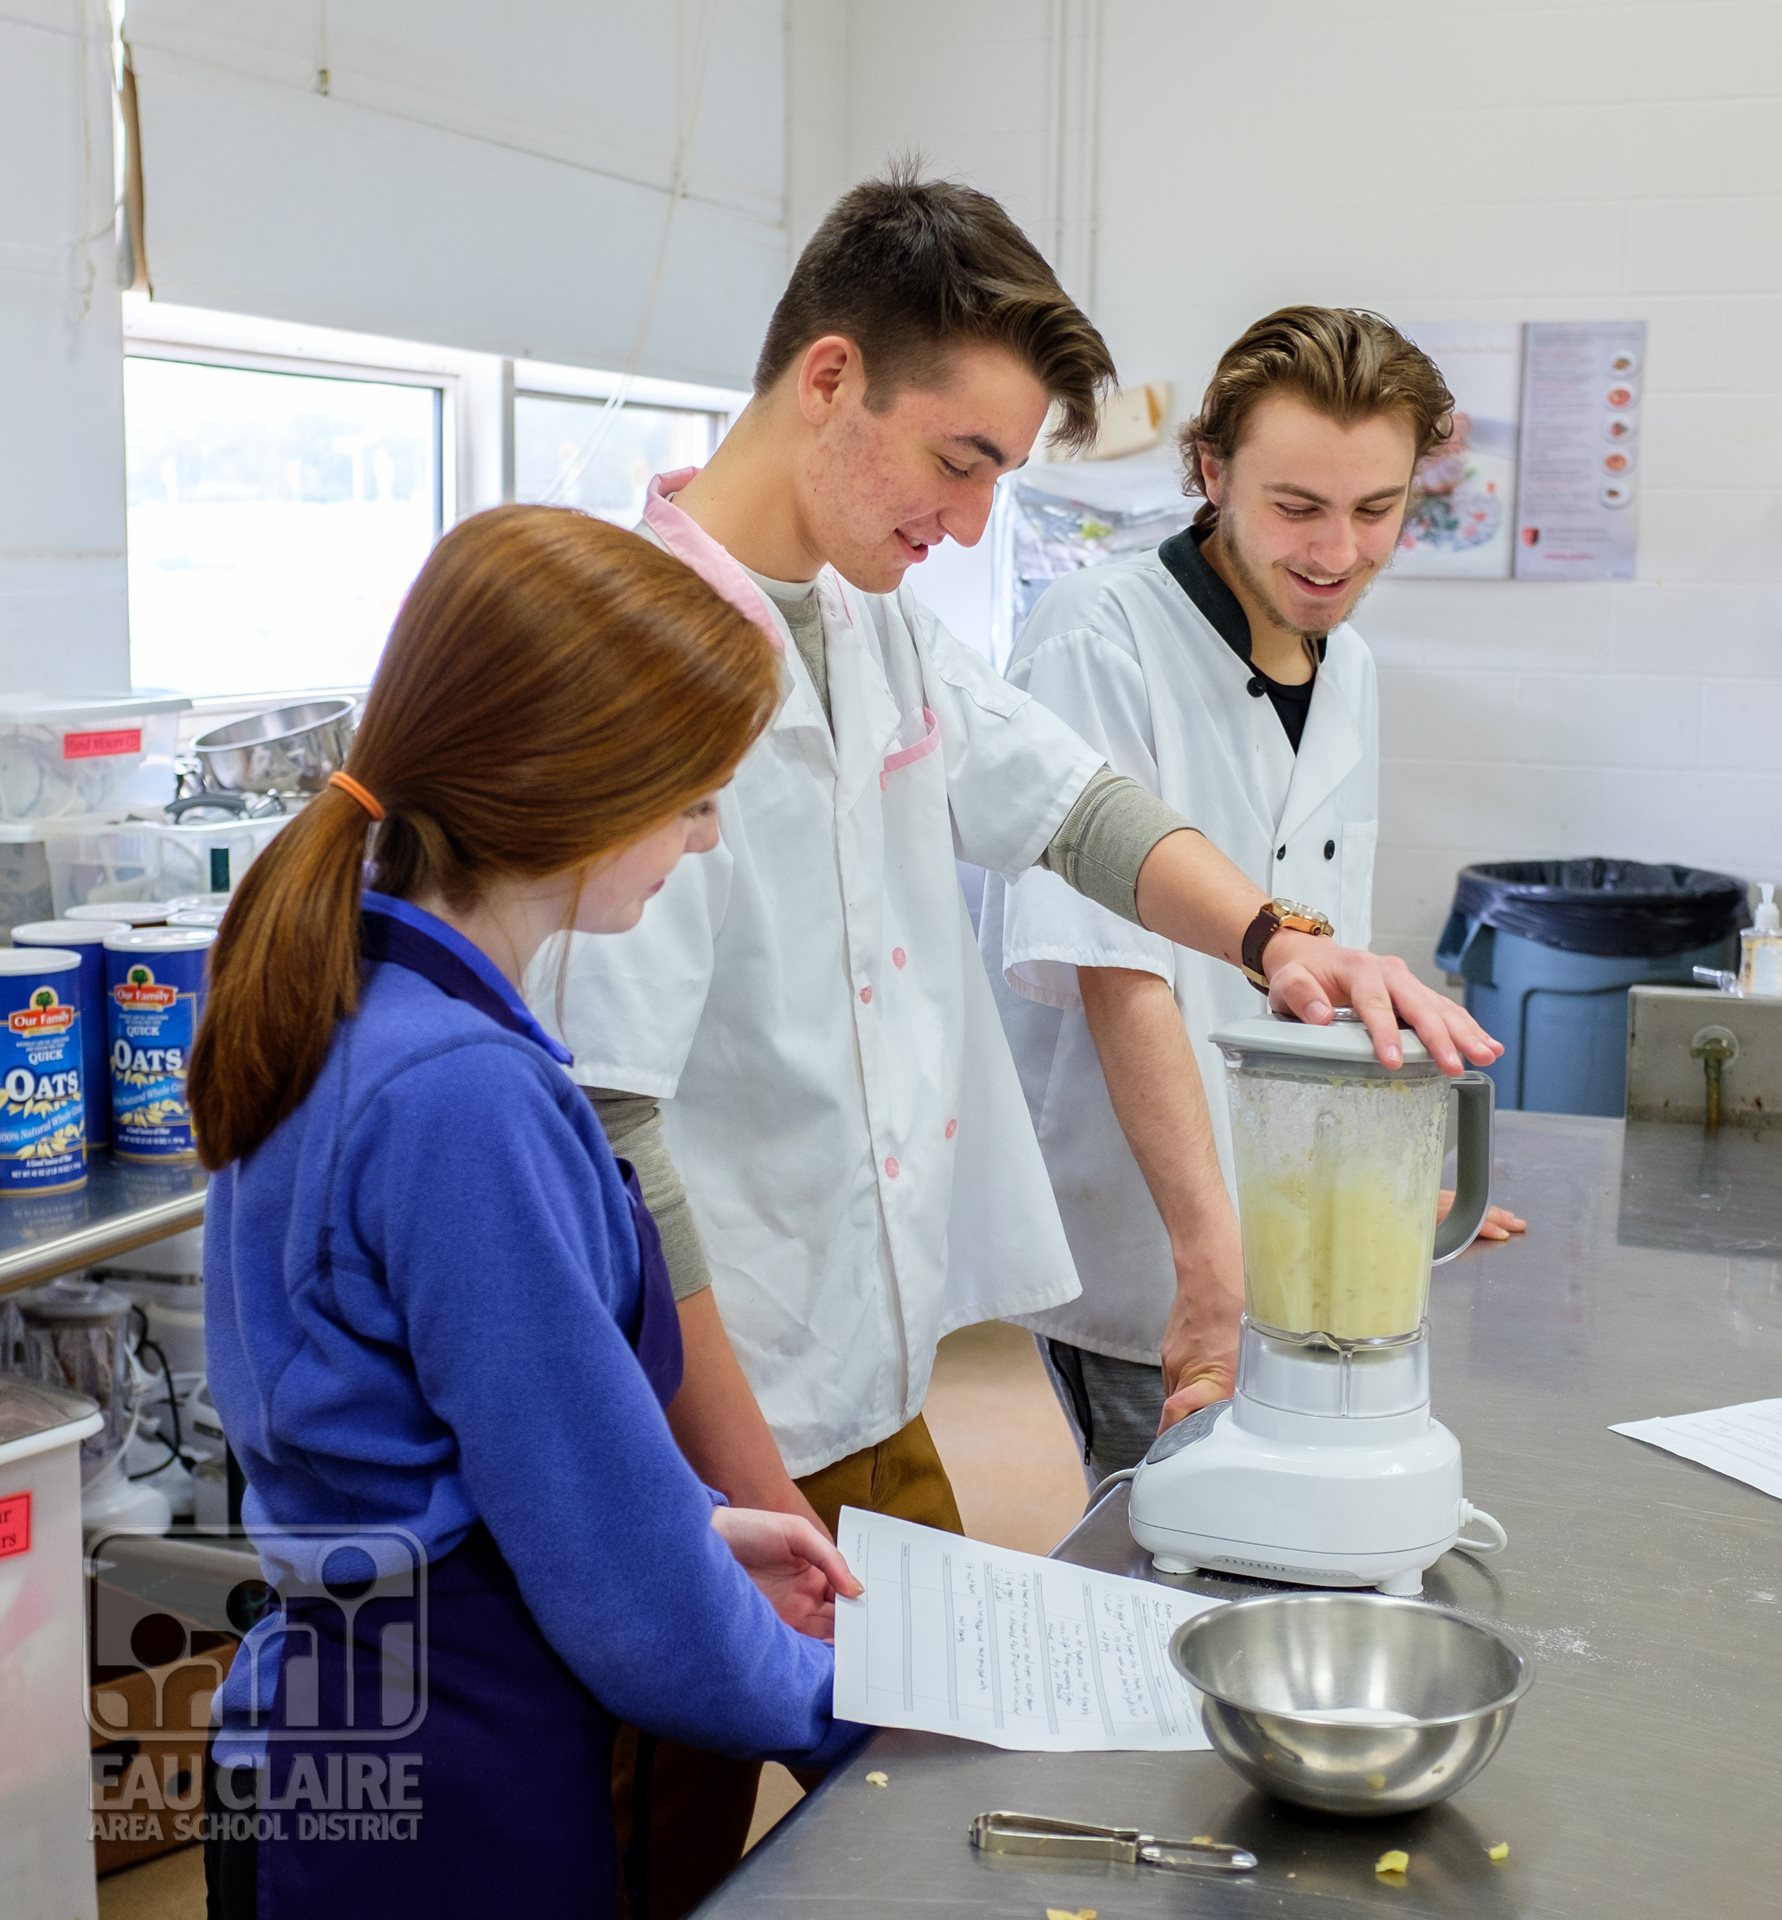 students preparing food